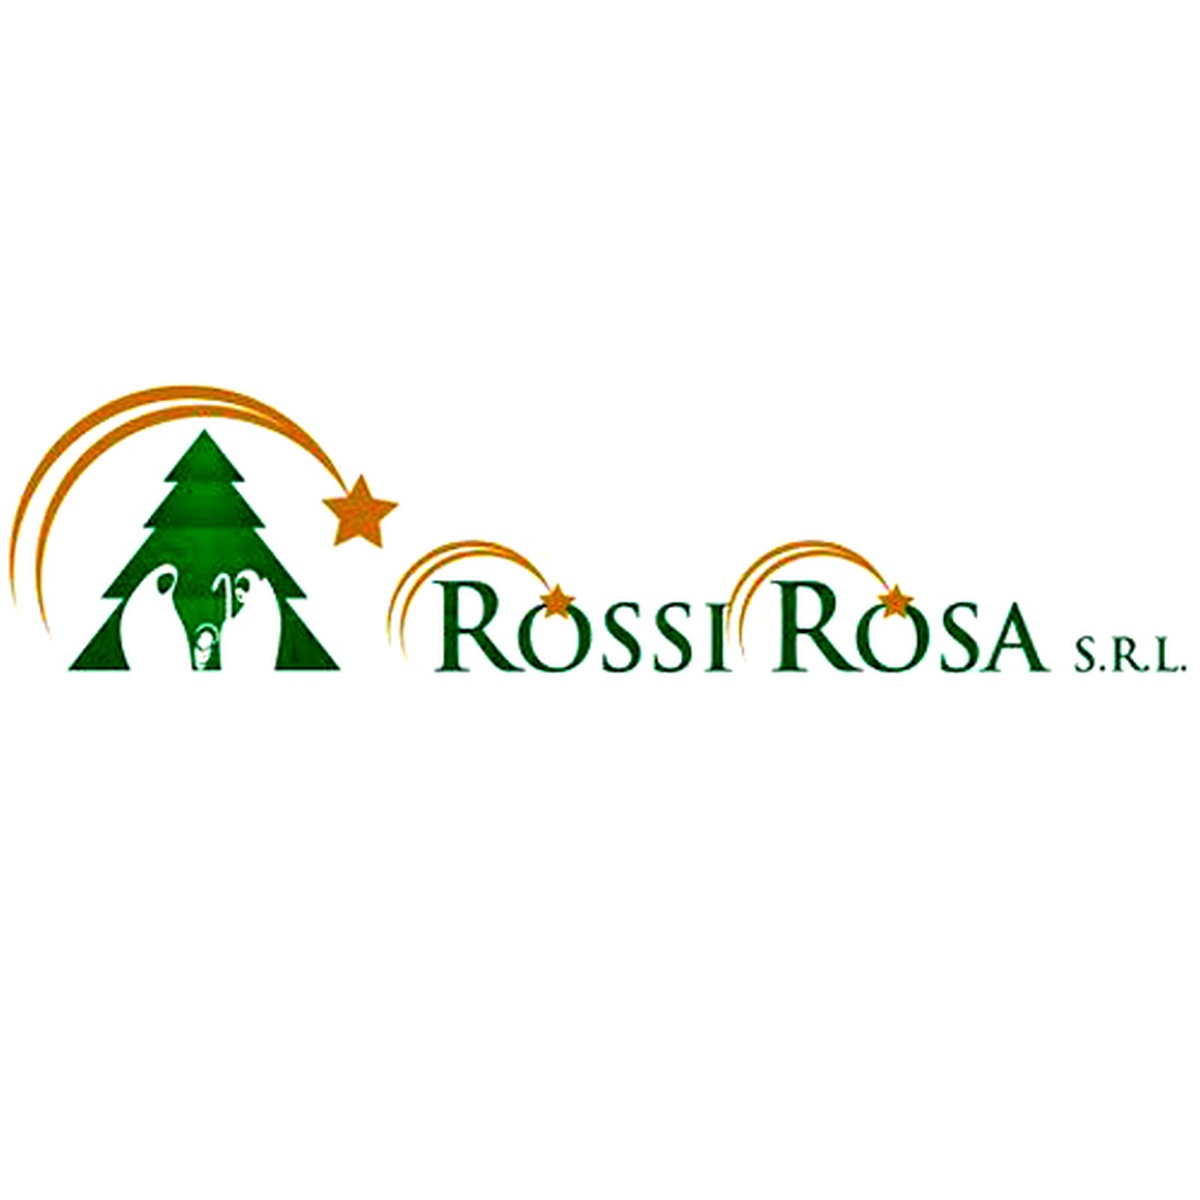 Rossi Rosa